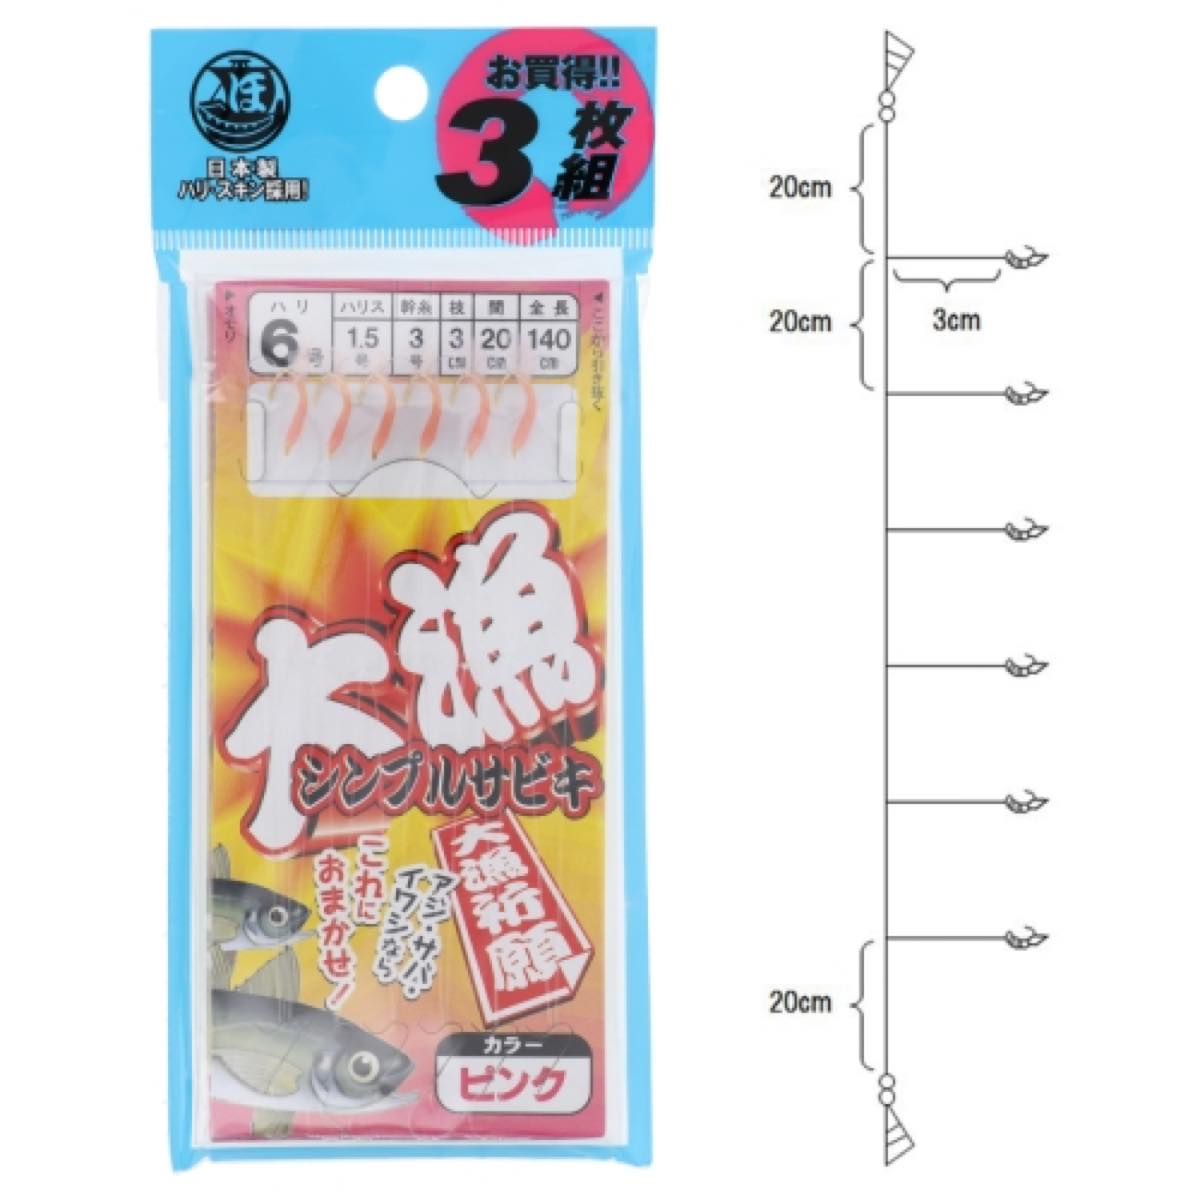 タカミヤ(TAKAMIYA) 大漁シンプルサビキ 3枚組 針6号-ハリス1.5号 ピンク ネコポス(メール便)対象商品